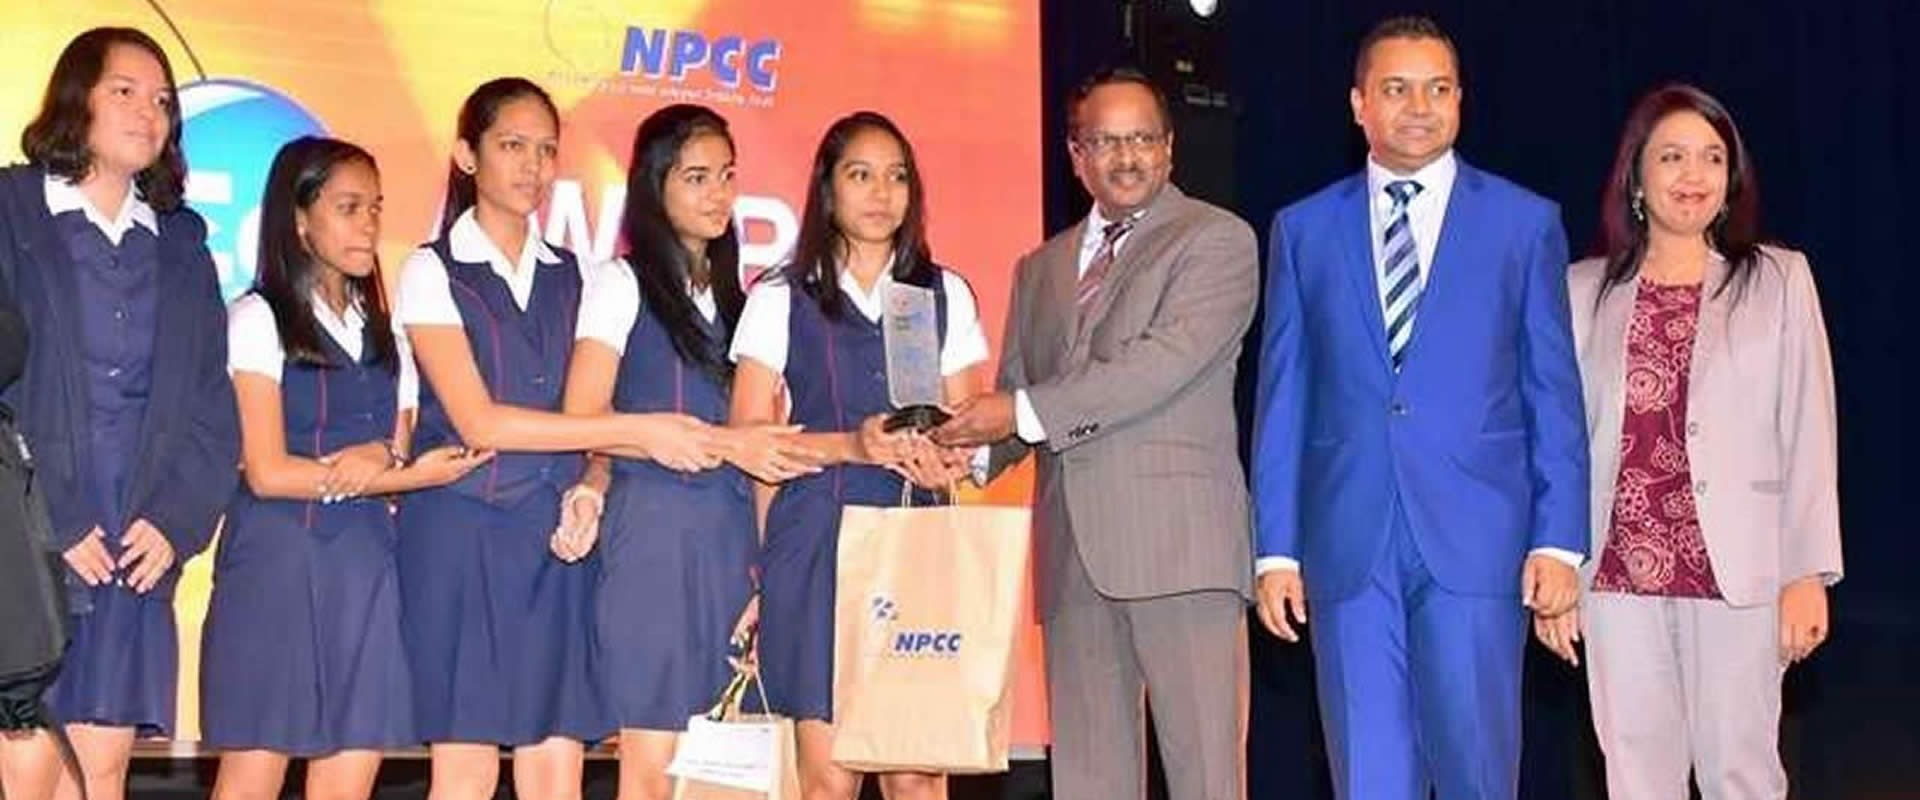 Le NPCC récompense les gagnants d’InnovEd 2018